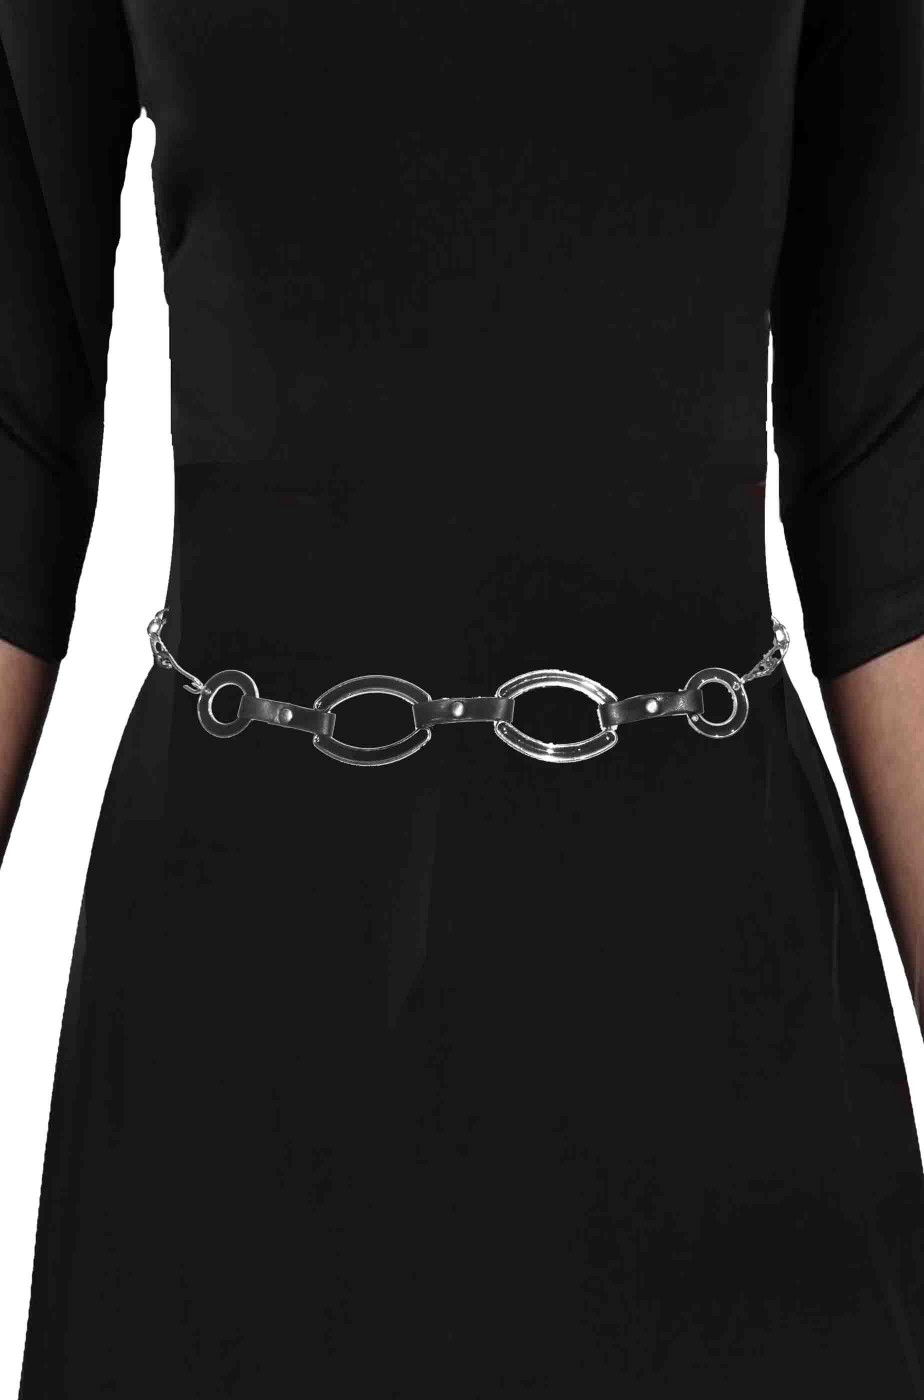 Cintura da donna di pelle e metallo con anelli ovali stile vintage anni 60